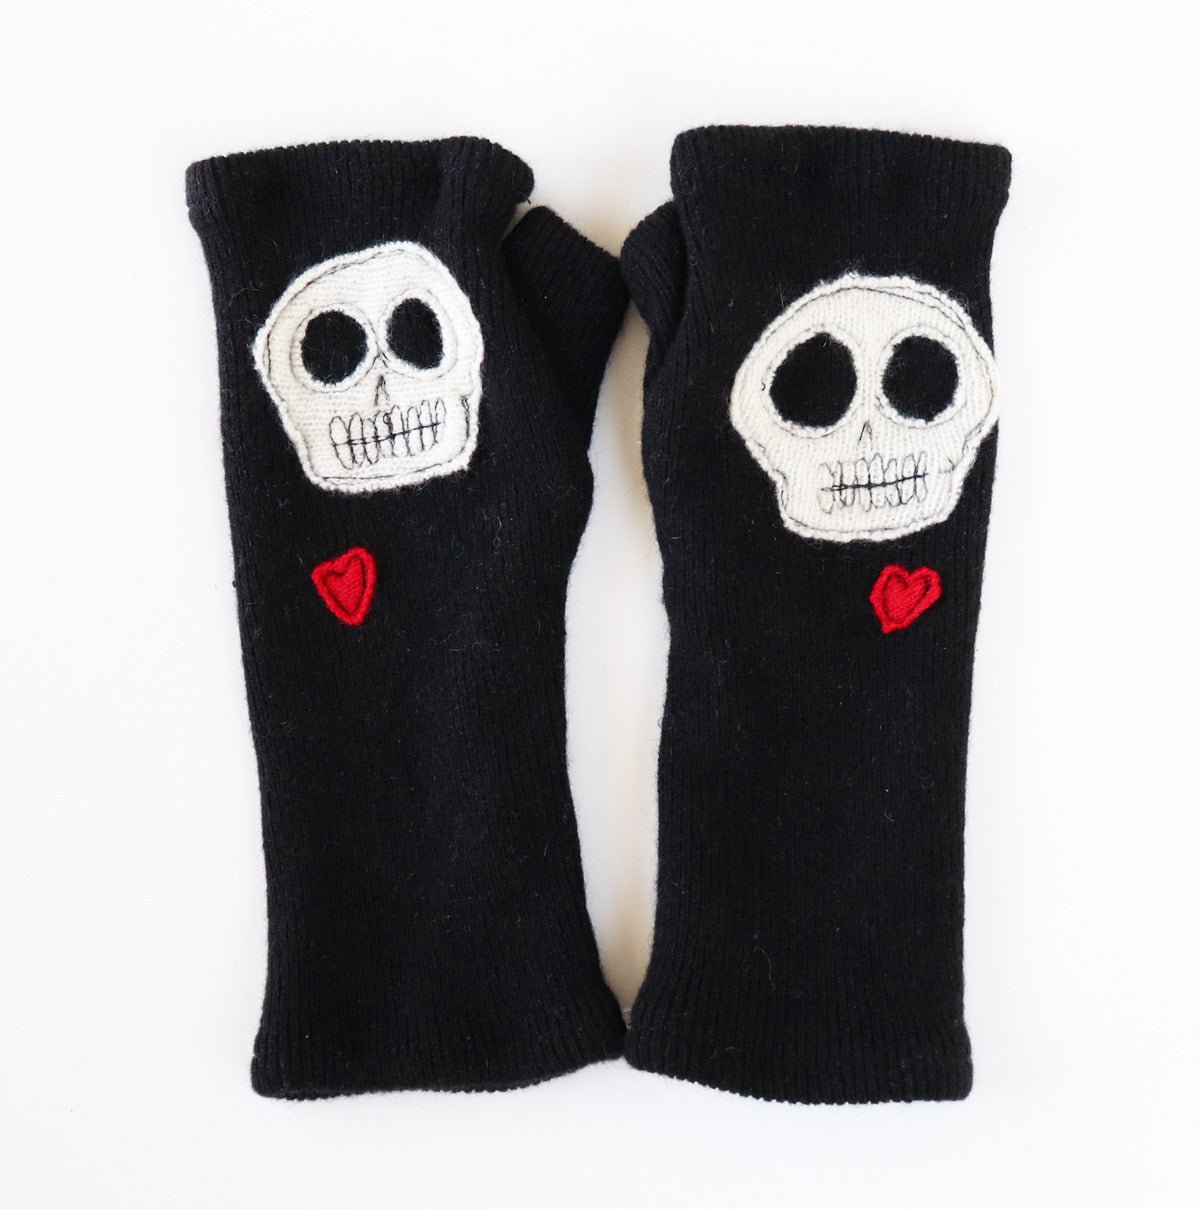 Skulls on Black Cashmere Fingerless Gloves - BESPOKE PROVISIONS